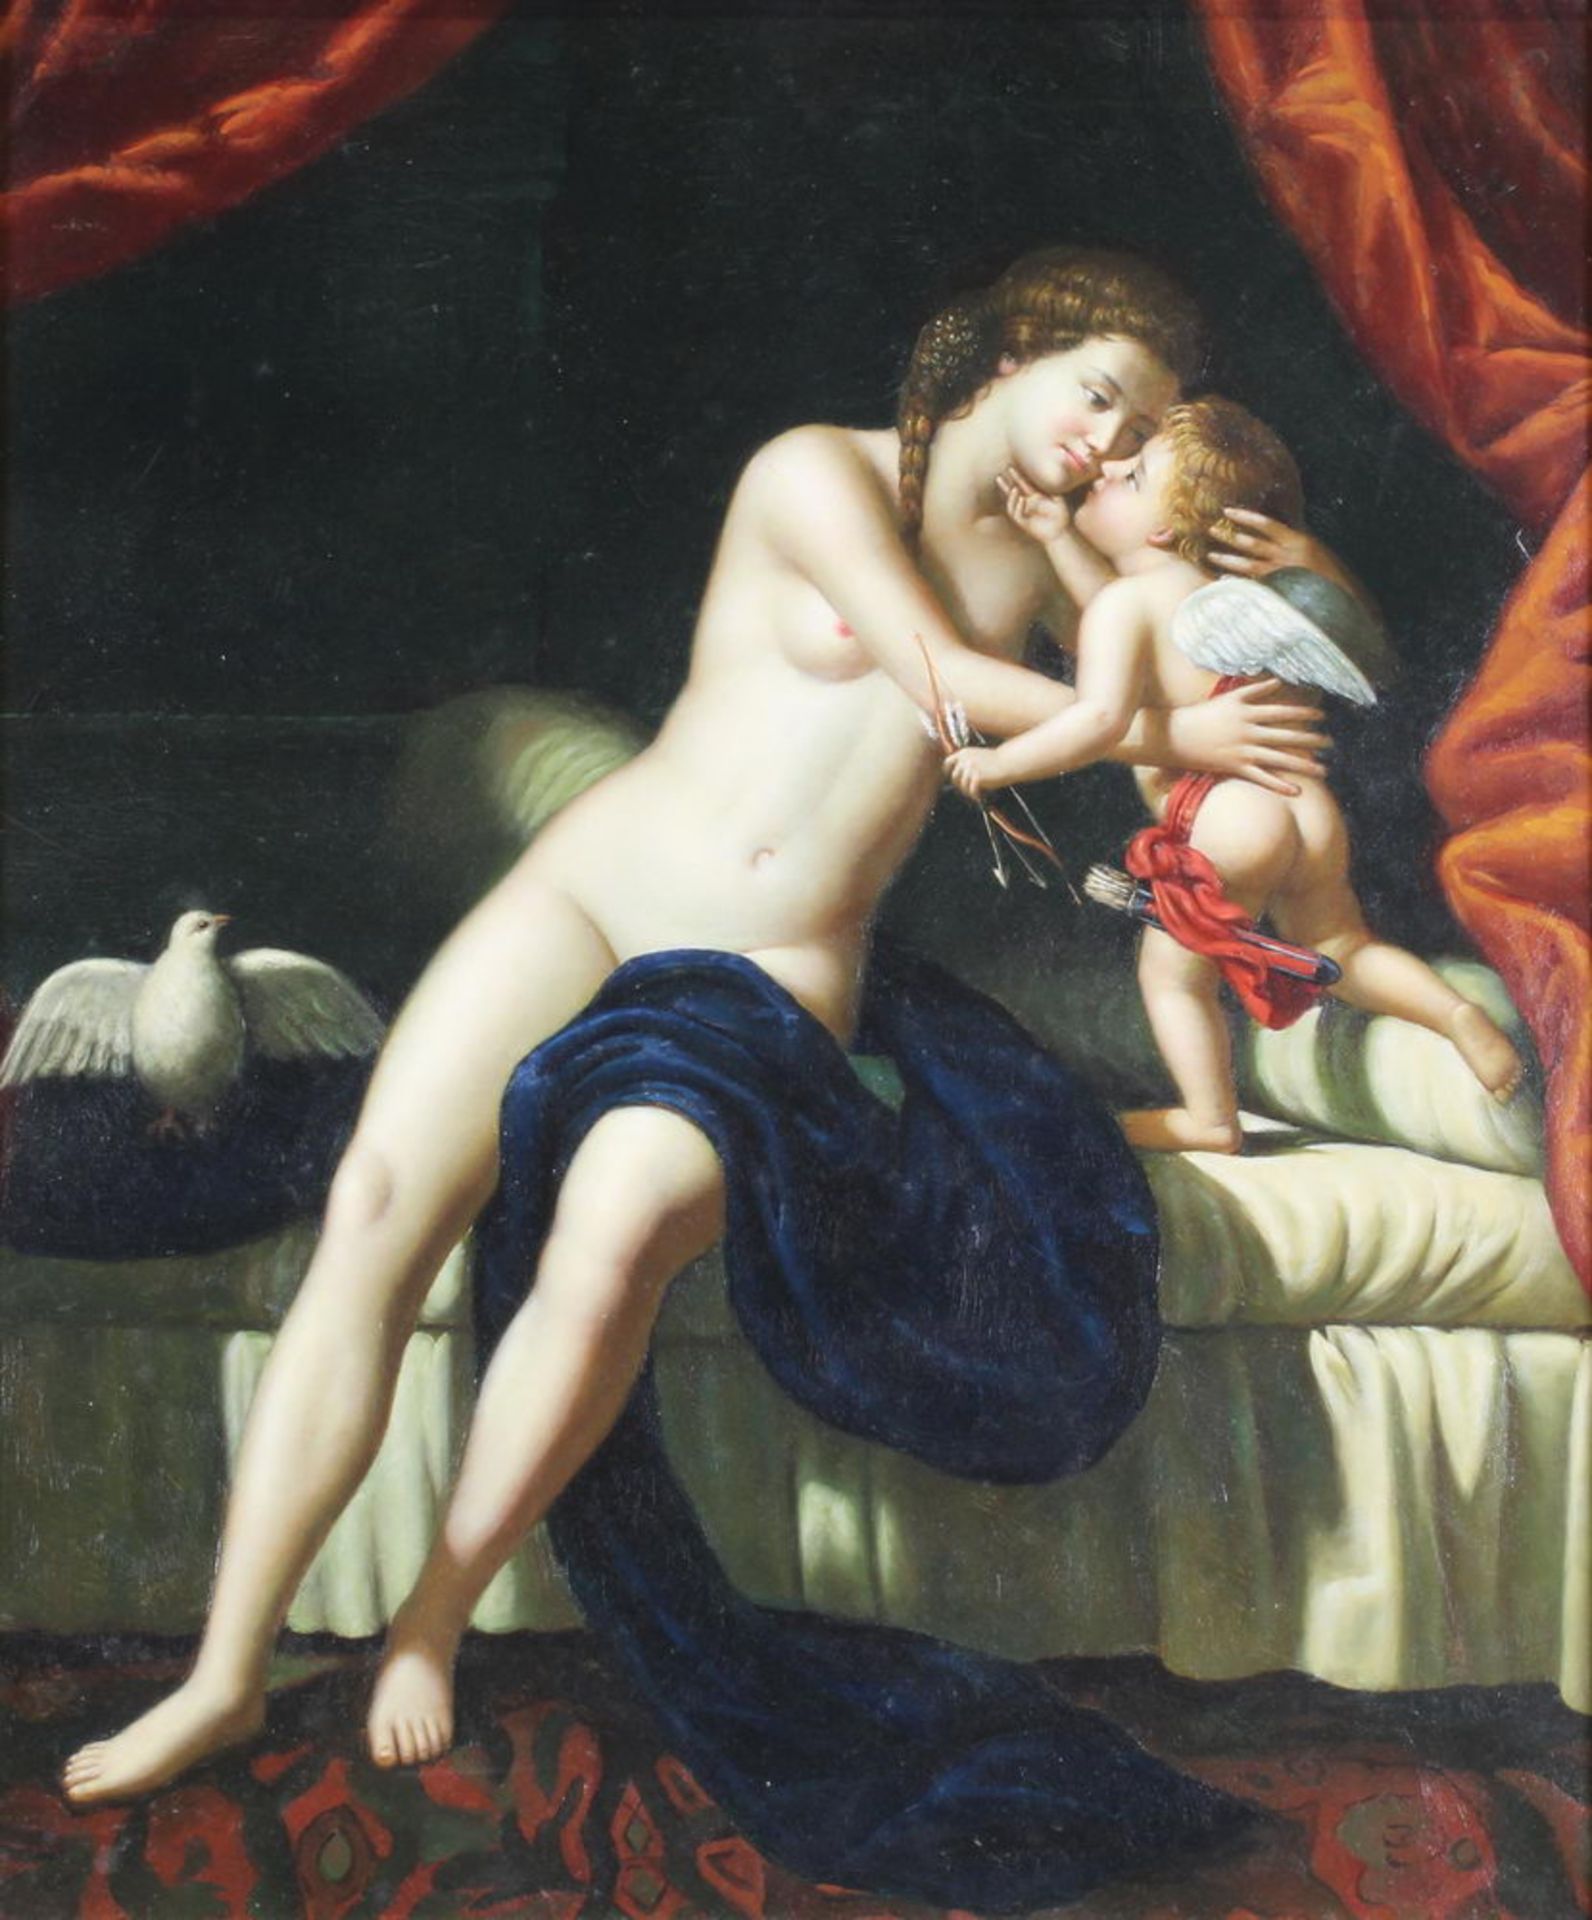 Unbekannter Maler (20. Jh.), "Venus und Amor", Öl auf Leinwand, im alten Stil, 60 x 50 cm